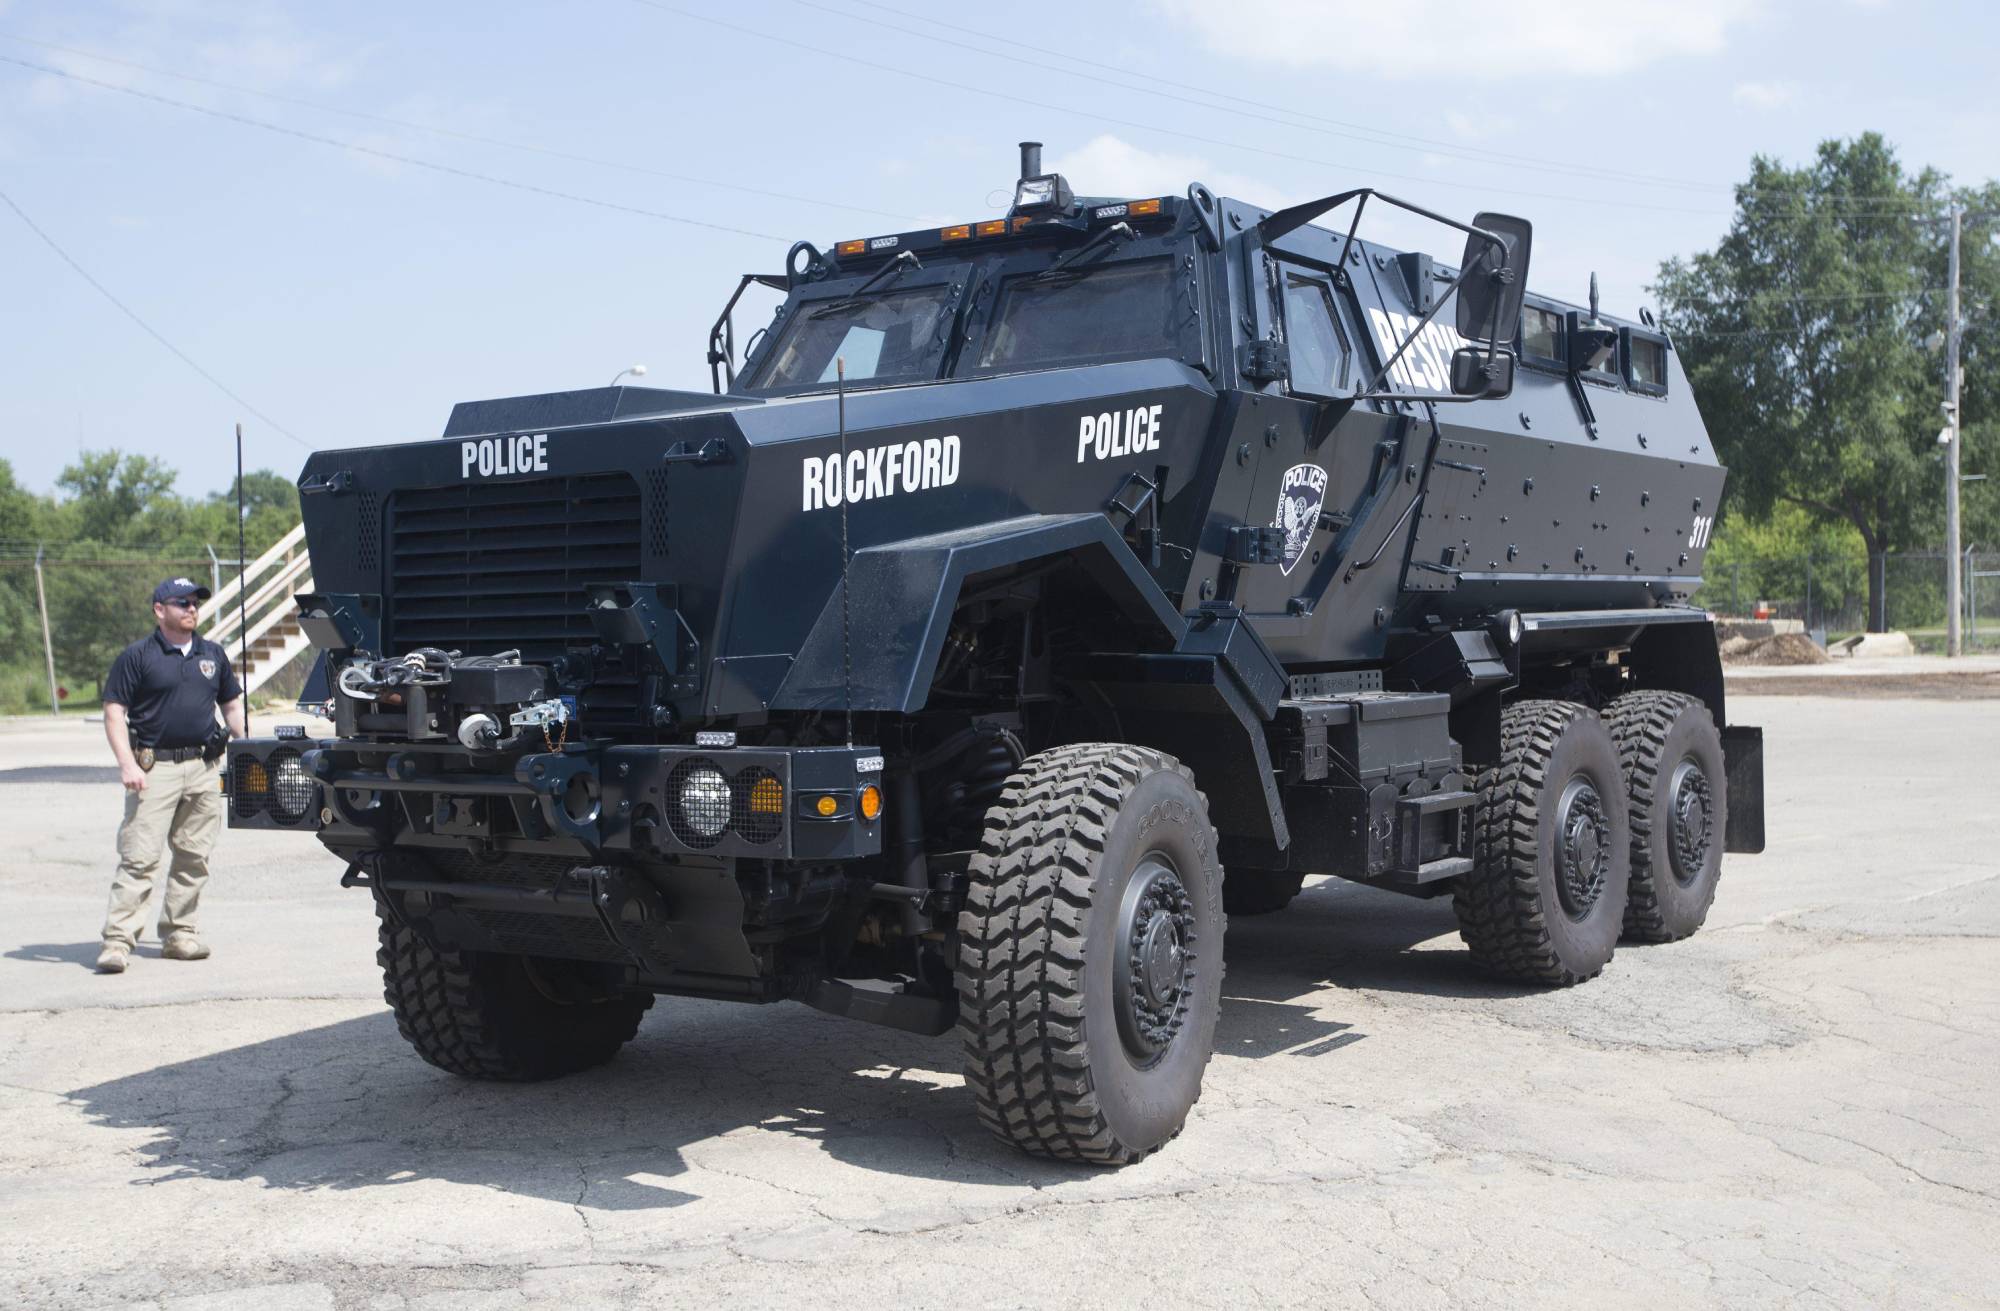 坐拥1100辆军方装甲车!美国警察武力强大,对待民众就像占领军!